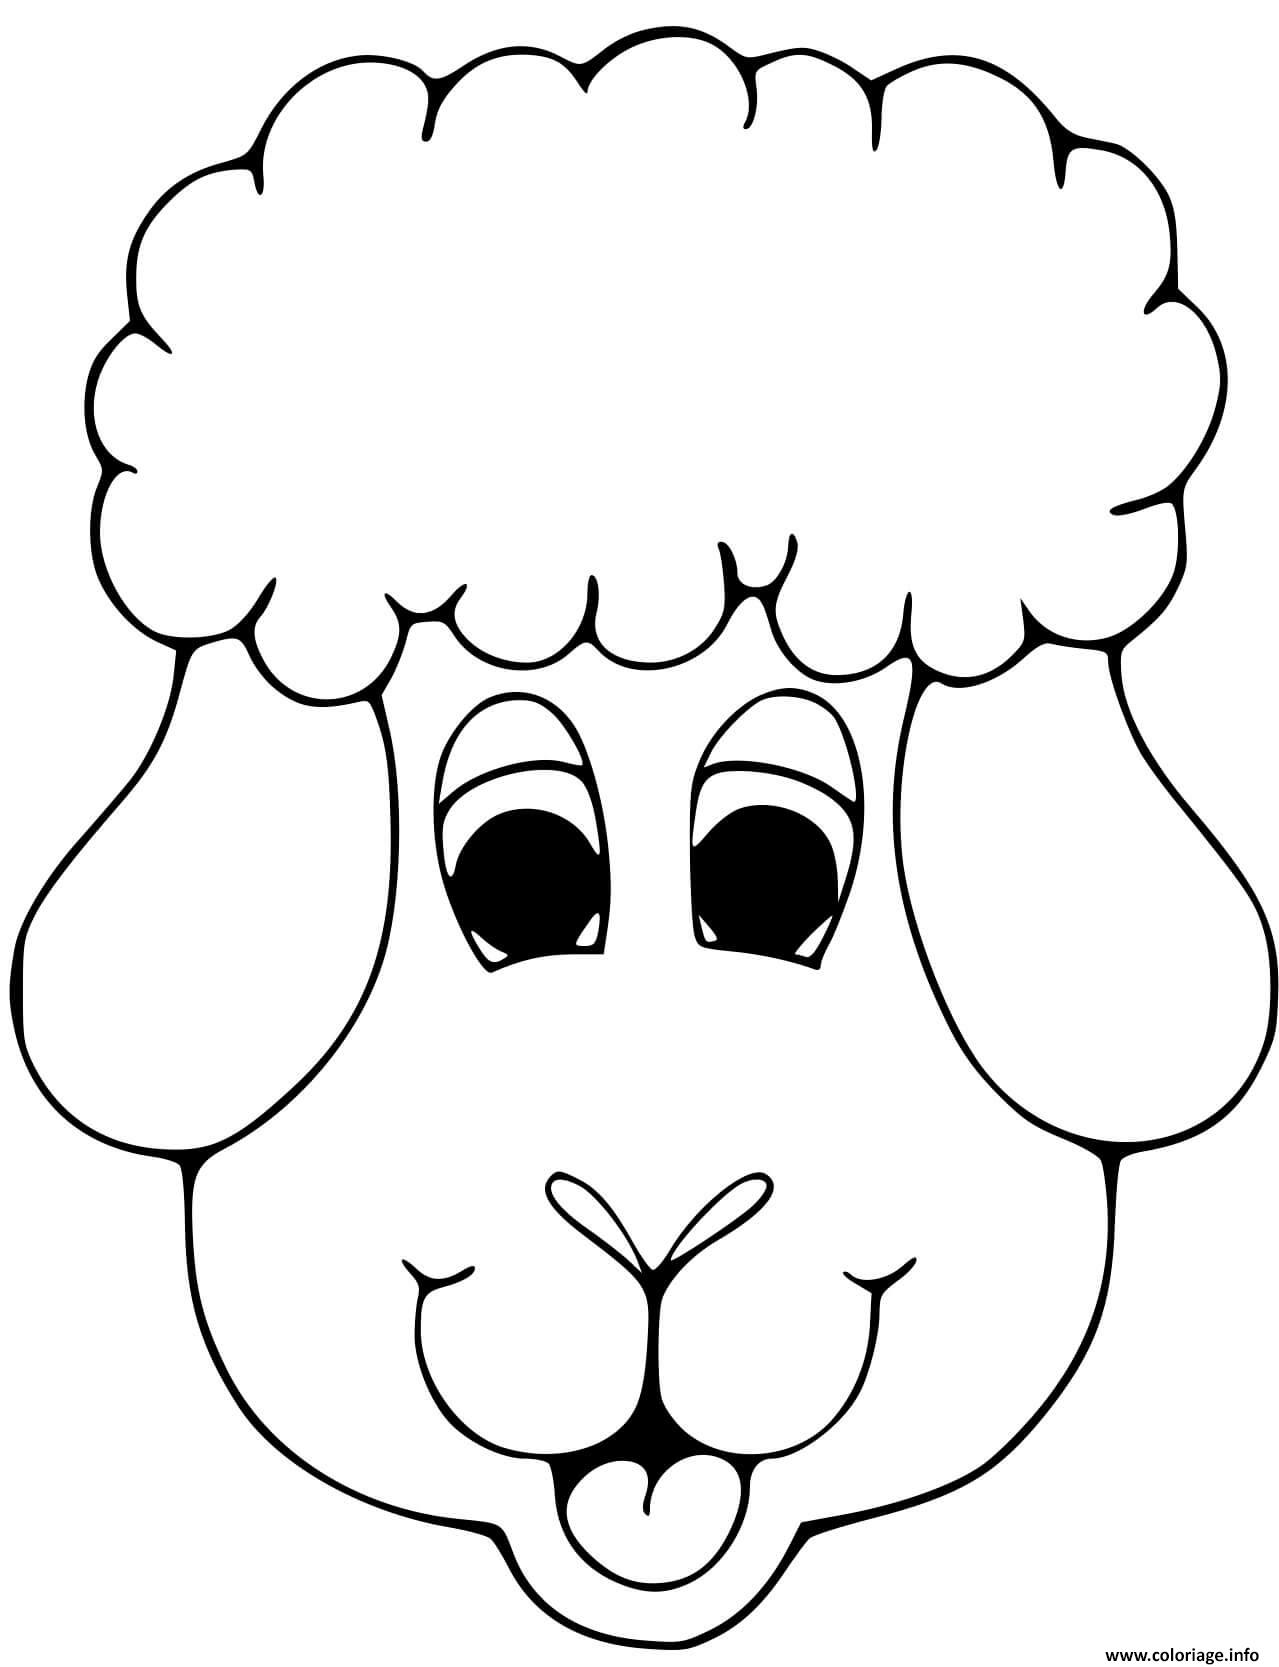 Coloriage tete de mouton - JeColorie.com